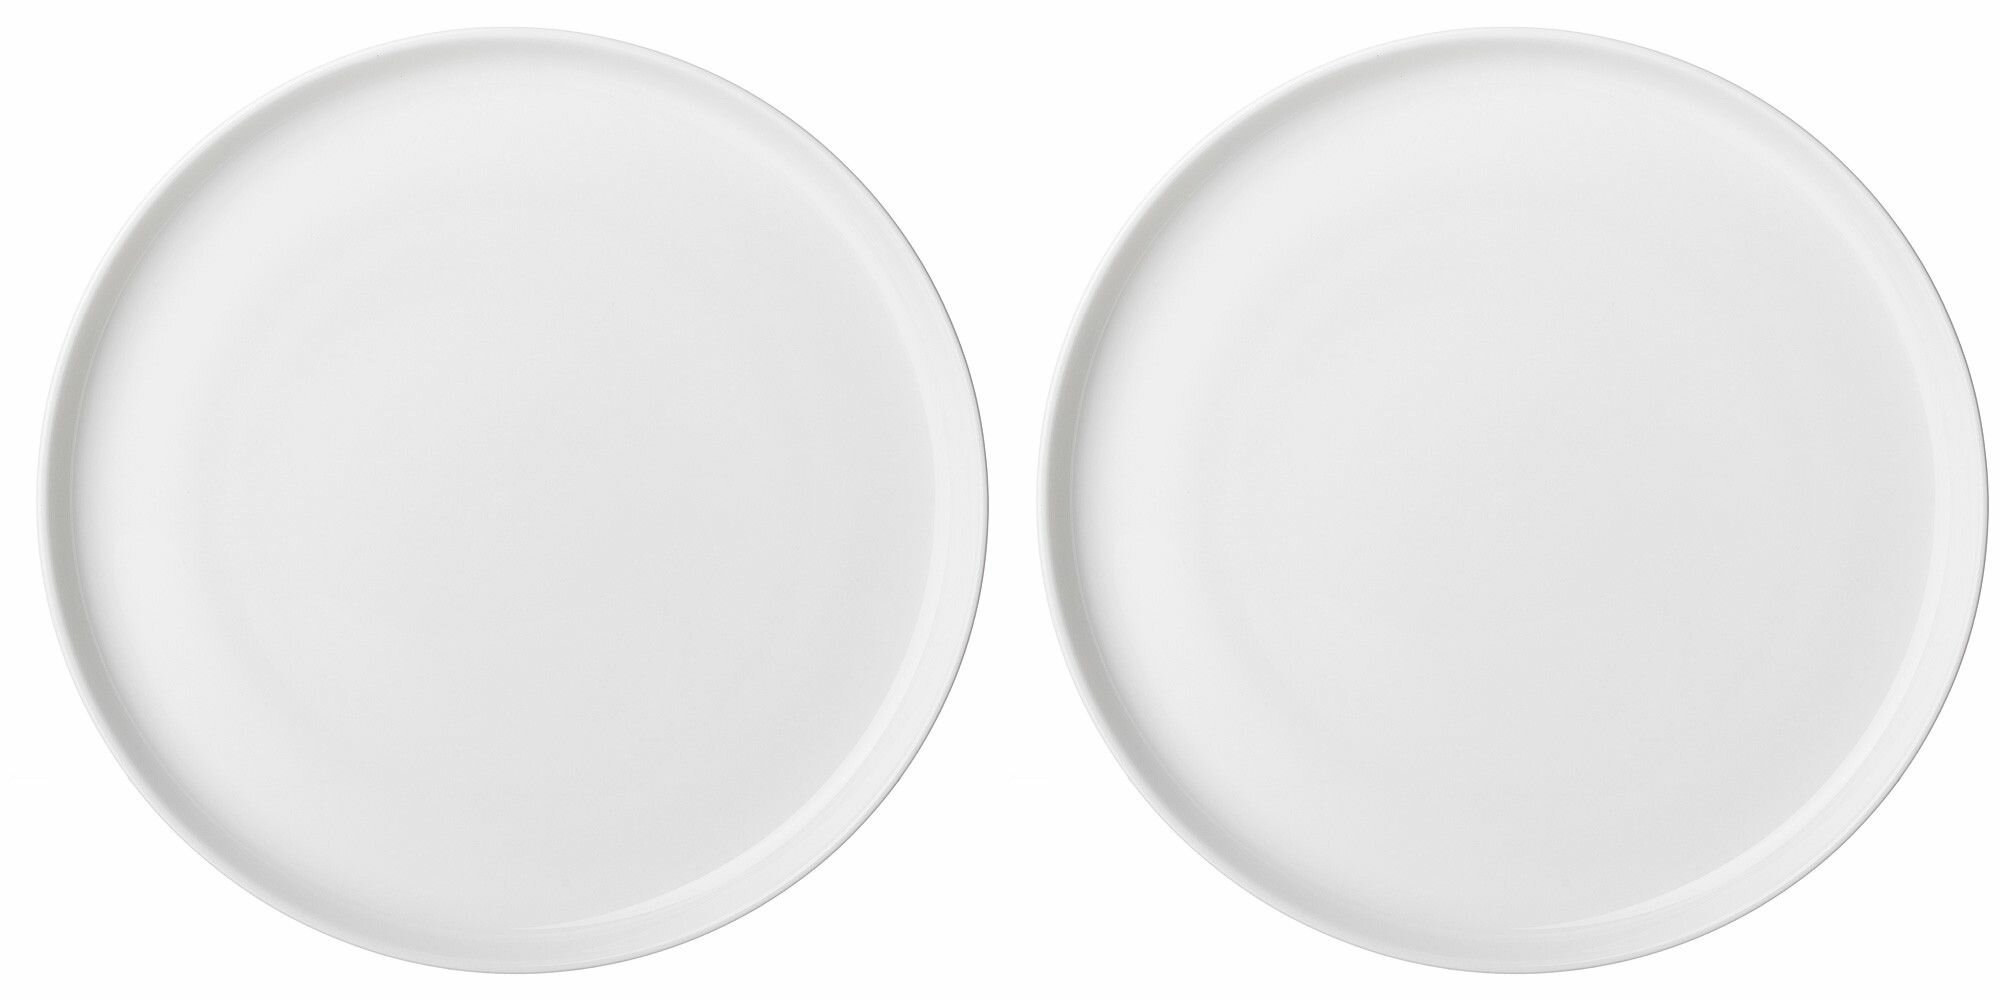 Набор тарелок Сервировочных Обеденных 26 см на 2 персоны Lefard Silk, Фарфор, Столовые Мелкие, Закусочные Белые, 2 Шт набор посуды